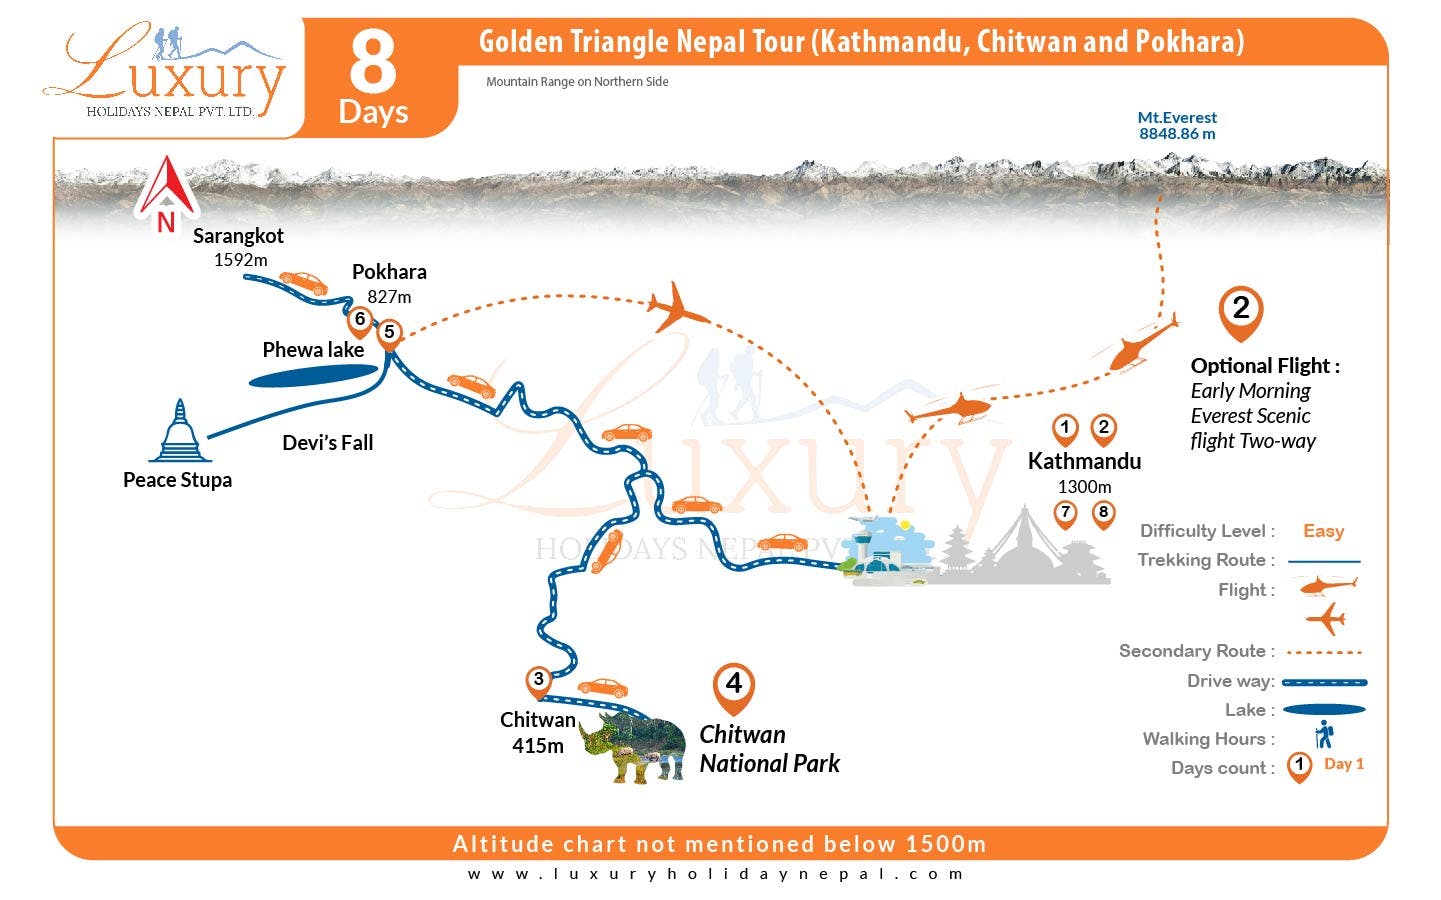 Golden Triangle Nepal Tour (Kathmandu, Chitwan and Pokhara)Map